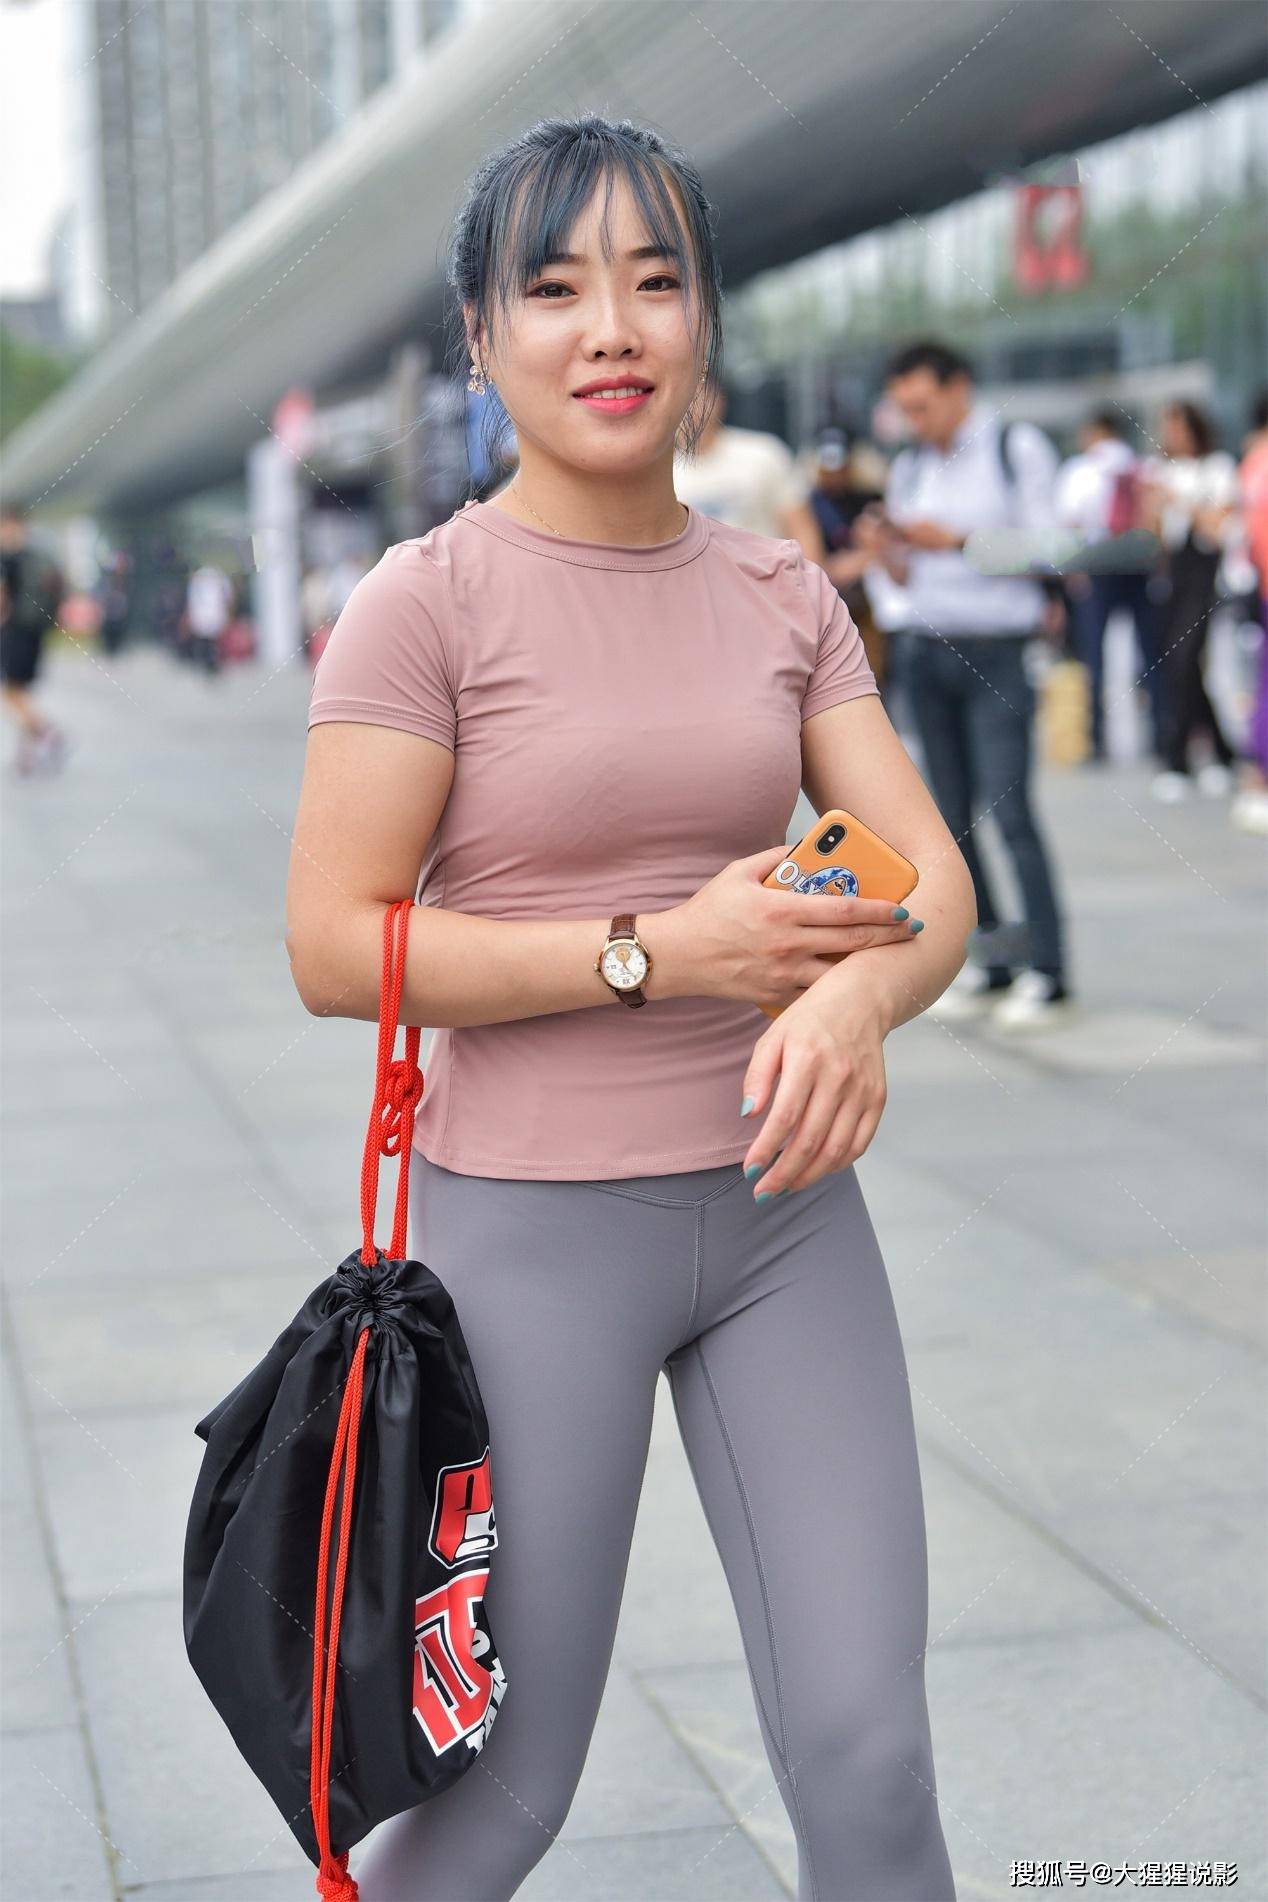 街拍微胖的女孩也能穿皮粉色上衣搭配灰色芭比裤运动休闲风